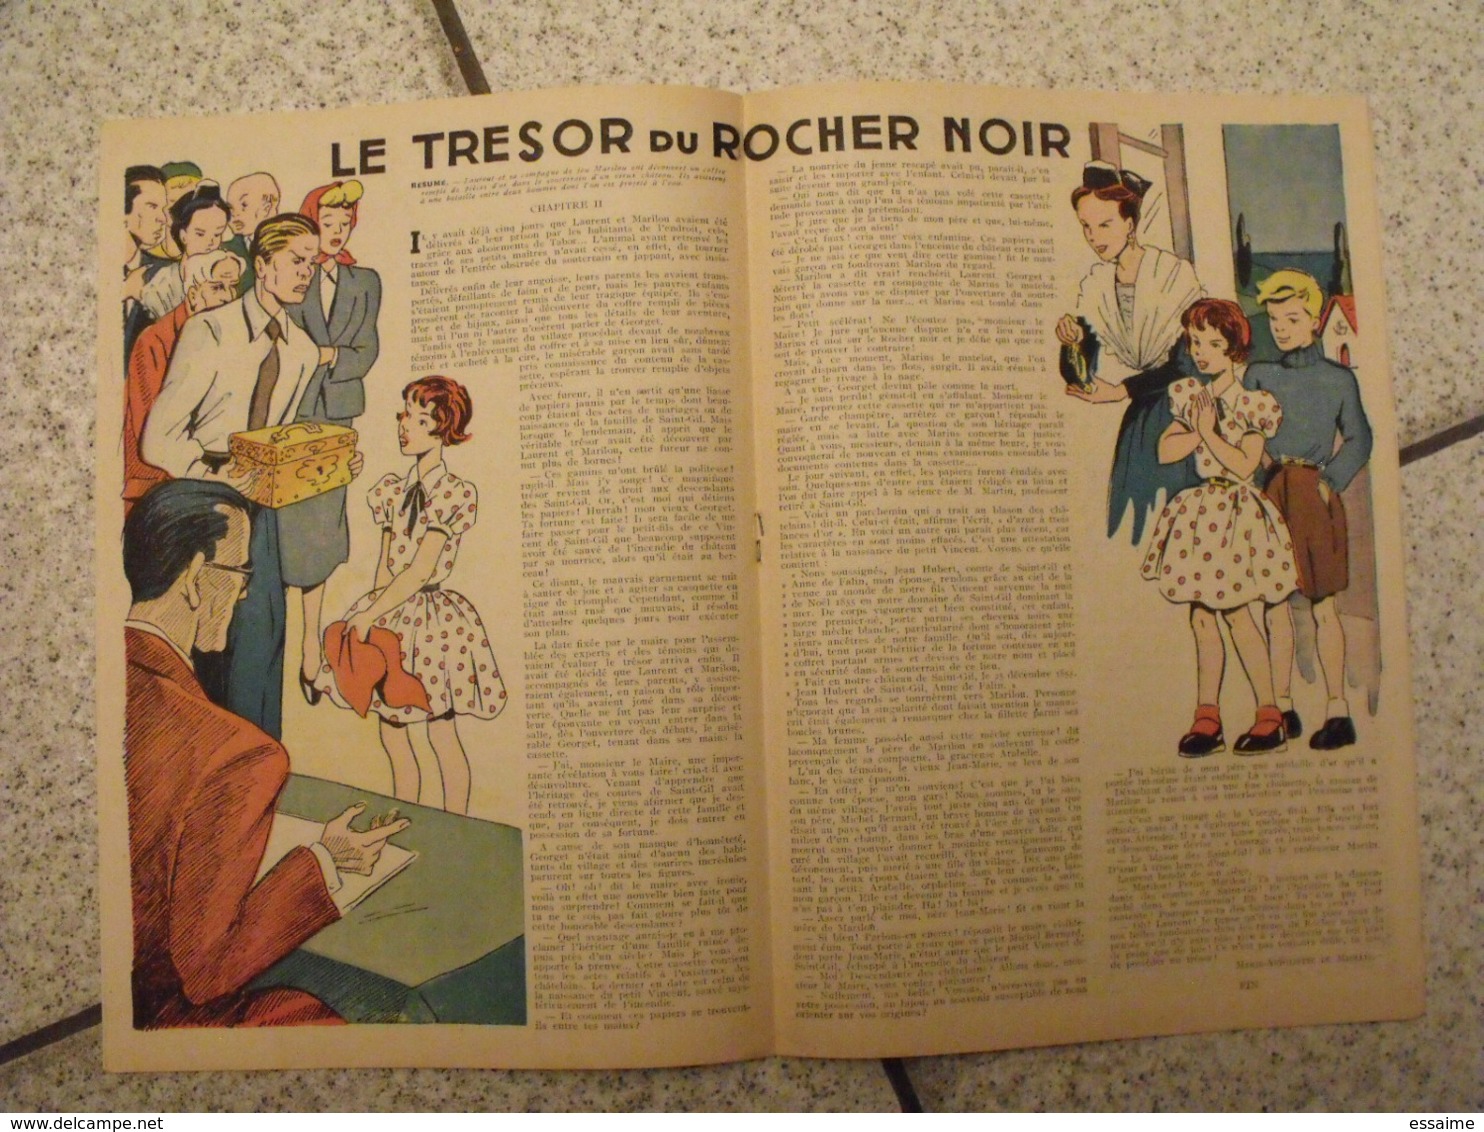 Lisette. 24 n° 1954-55. revue pour fillette. Erik (nique pat prune) Marié (zette reporter) Solveg  à redécouvrir